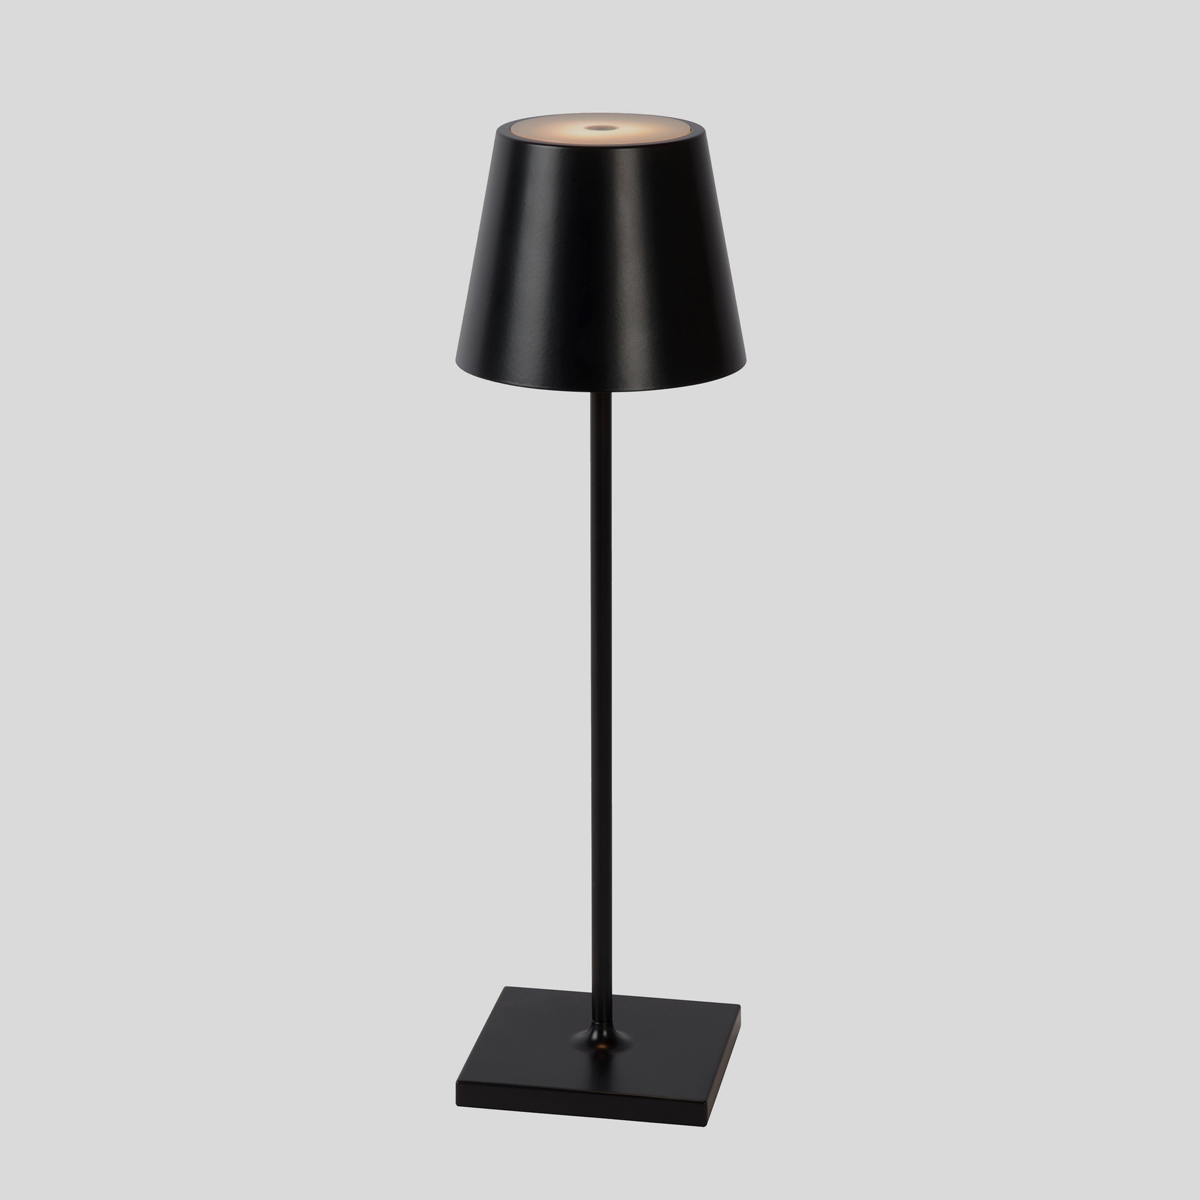 Het ontwerp van de Lucide Justin tafellamp is beïnvloed door de klassieke staande lamp. Dat geeft deze zwarte tafellamp iets speciaals. 